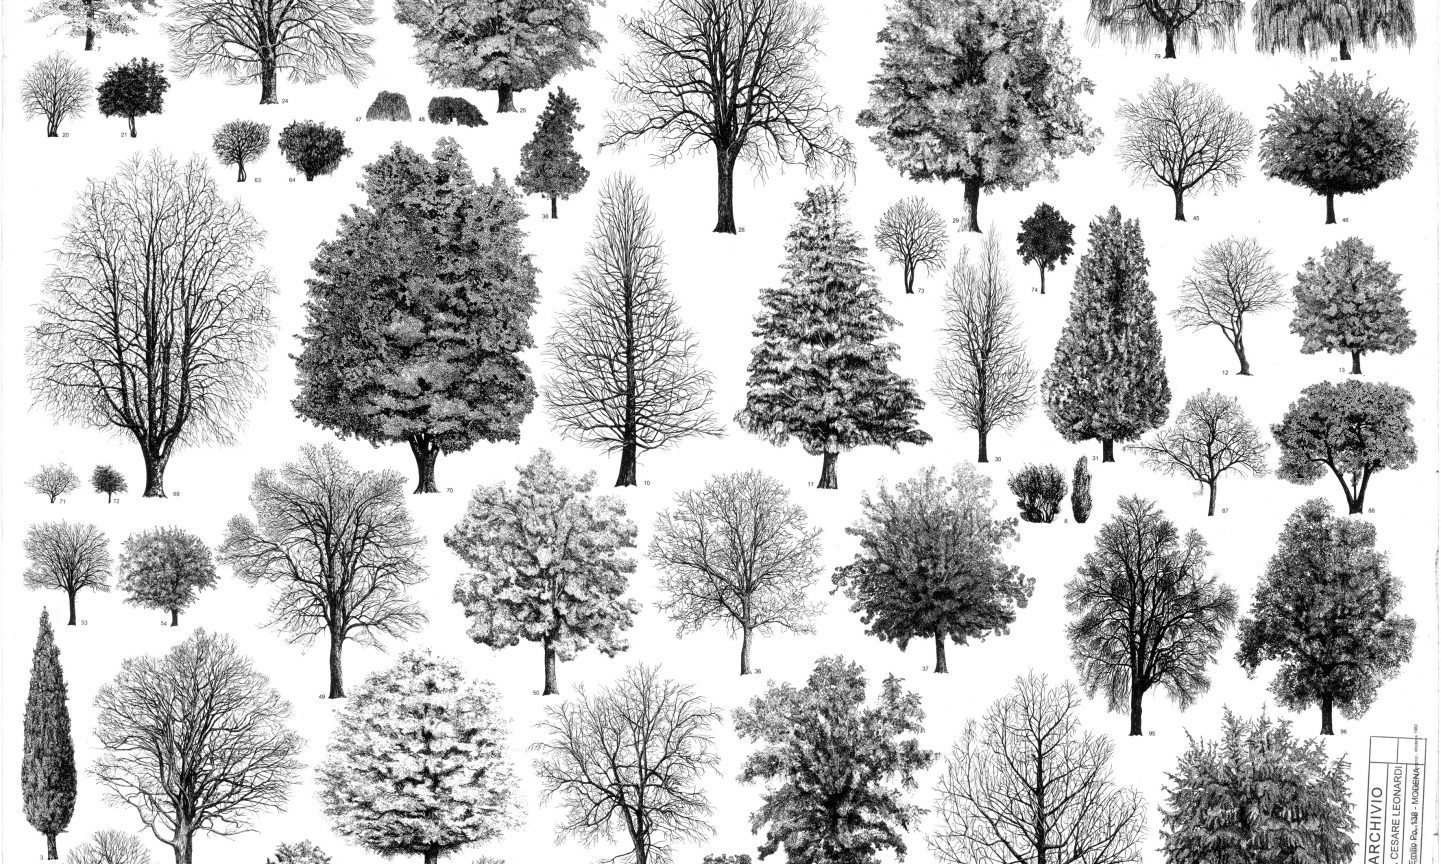 Planche représentant différentes espèces d'arbre en noir et blanc